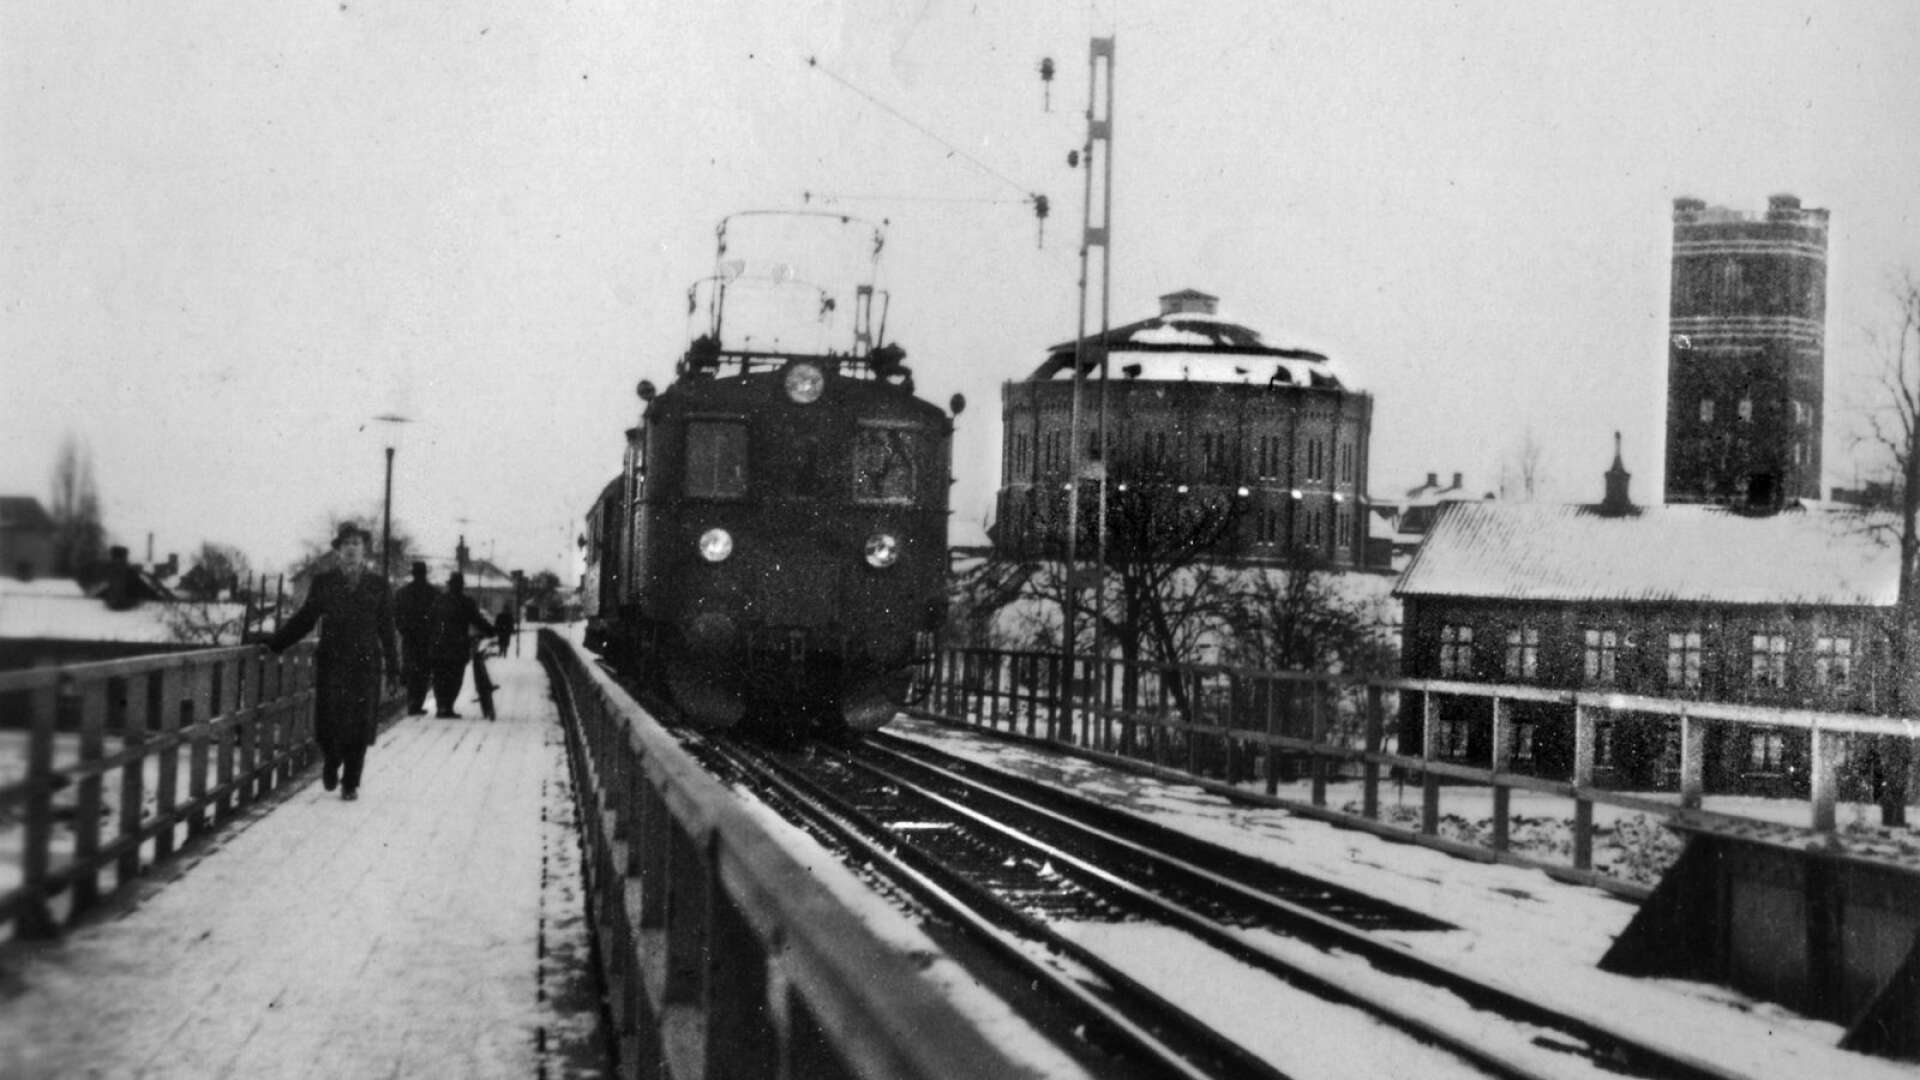 Järnvägsbron under 1940-talet med gasklockan och vattentornet på Kvarnberget i bakgrunden. En person har beskrivit det för hembygdsföreningen hur det var att möta tåget: ”Att gå över järnvägsbron när tåget kom var lagomt roligt och kusligt och det kändes i hela kroppen.”